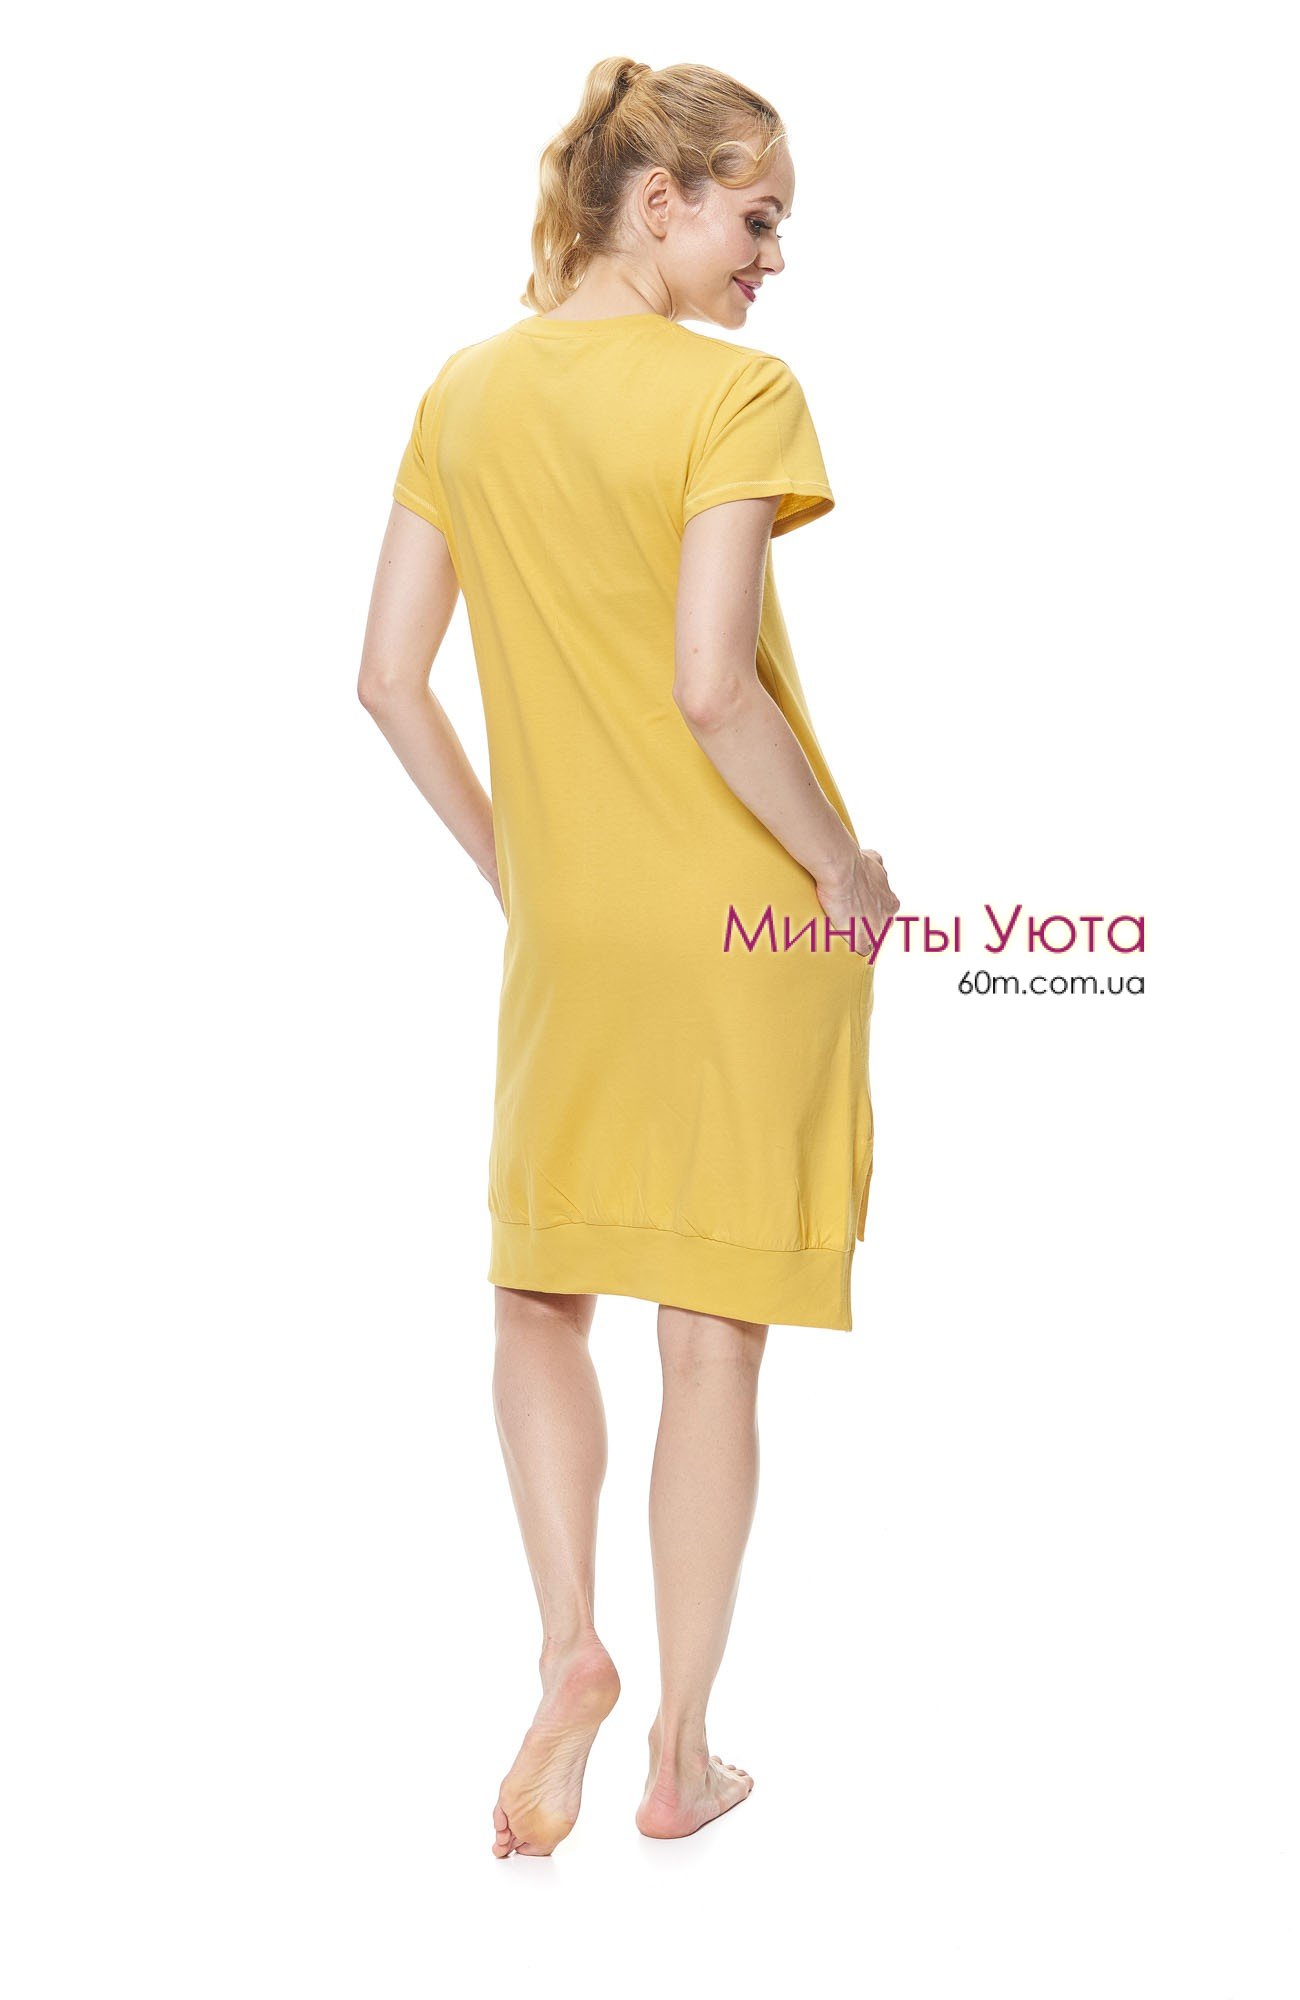 Женская сорочка с карманами в желтом цвете 